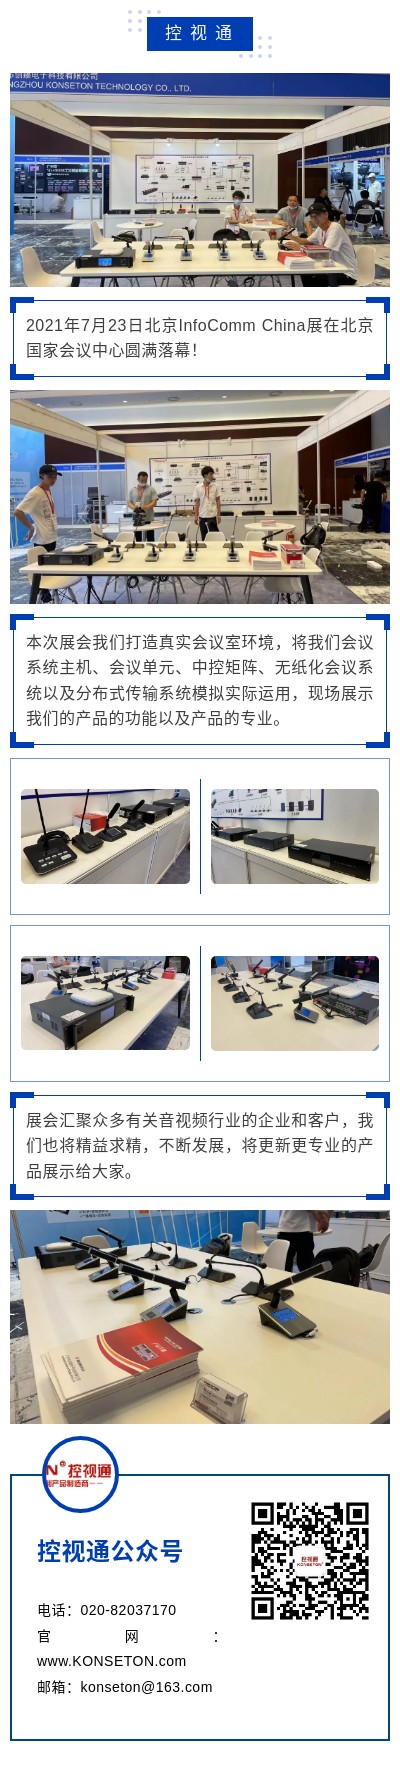 【控视通】北京InfoComm China 2021顺利落幕